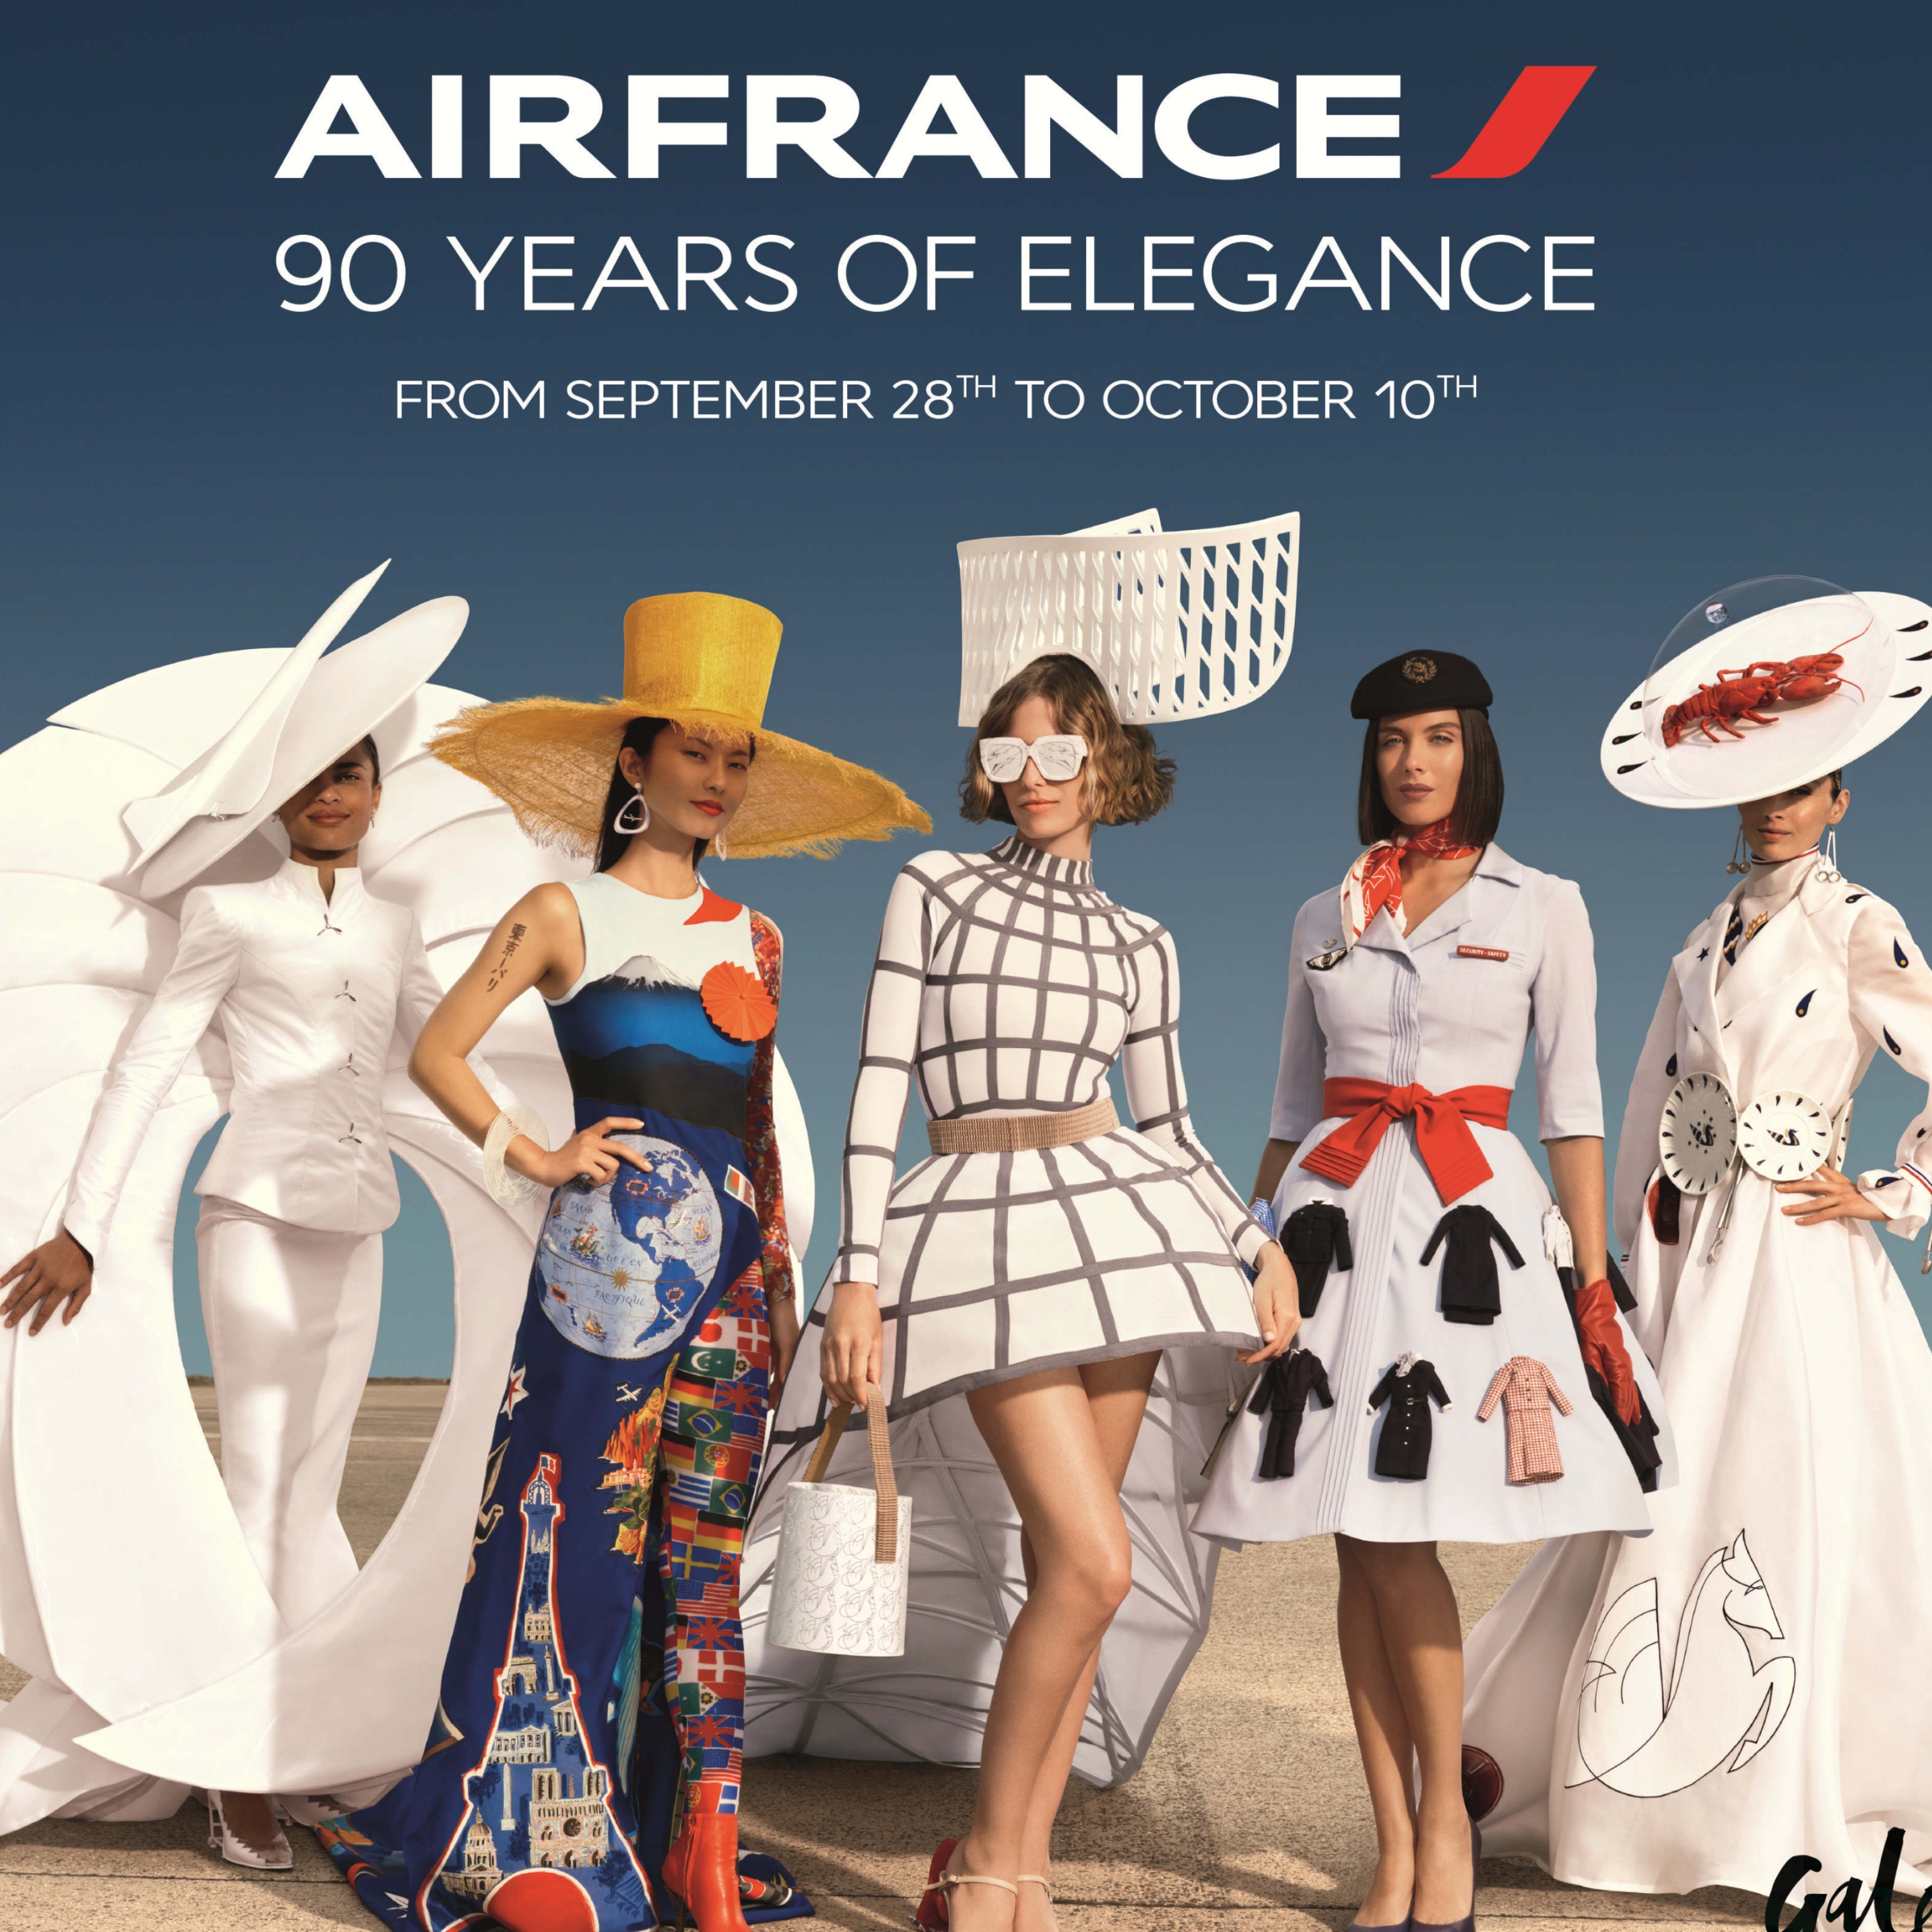 法国航空庆祝90年优雅之旅